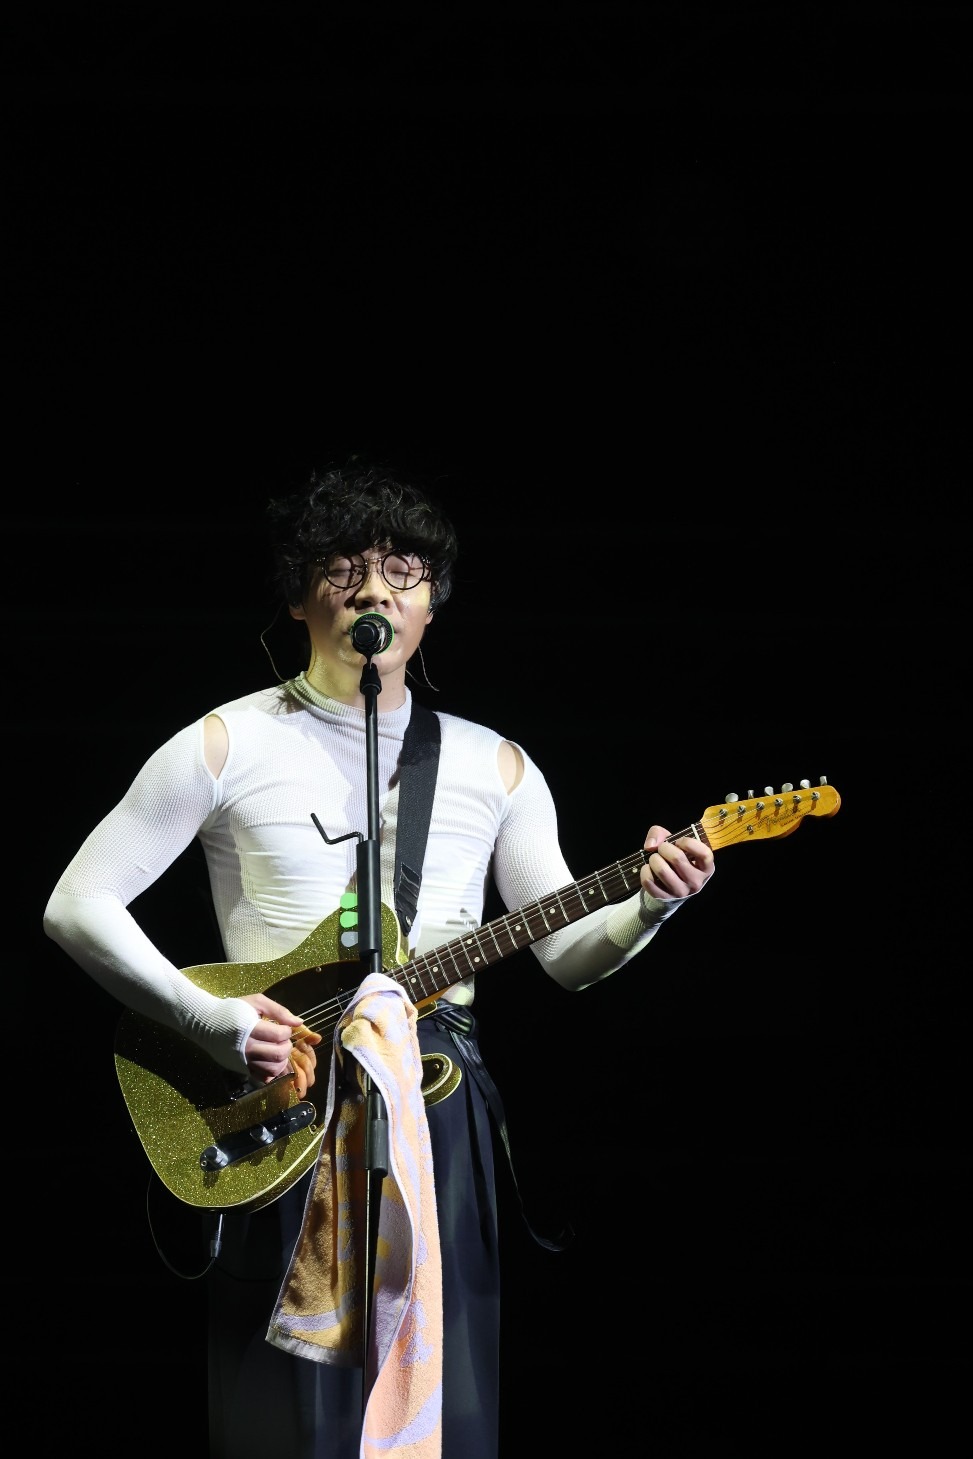 卢广仲在Encore环节卢广仲唱大受欢迎的《我爱你》。